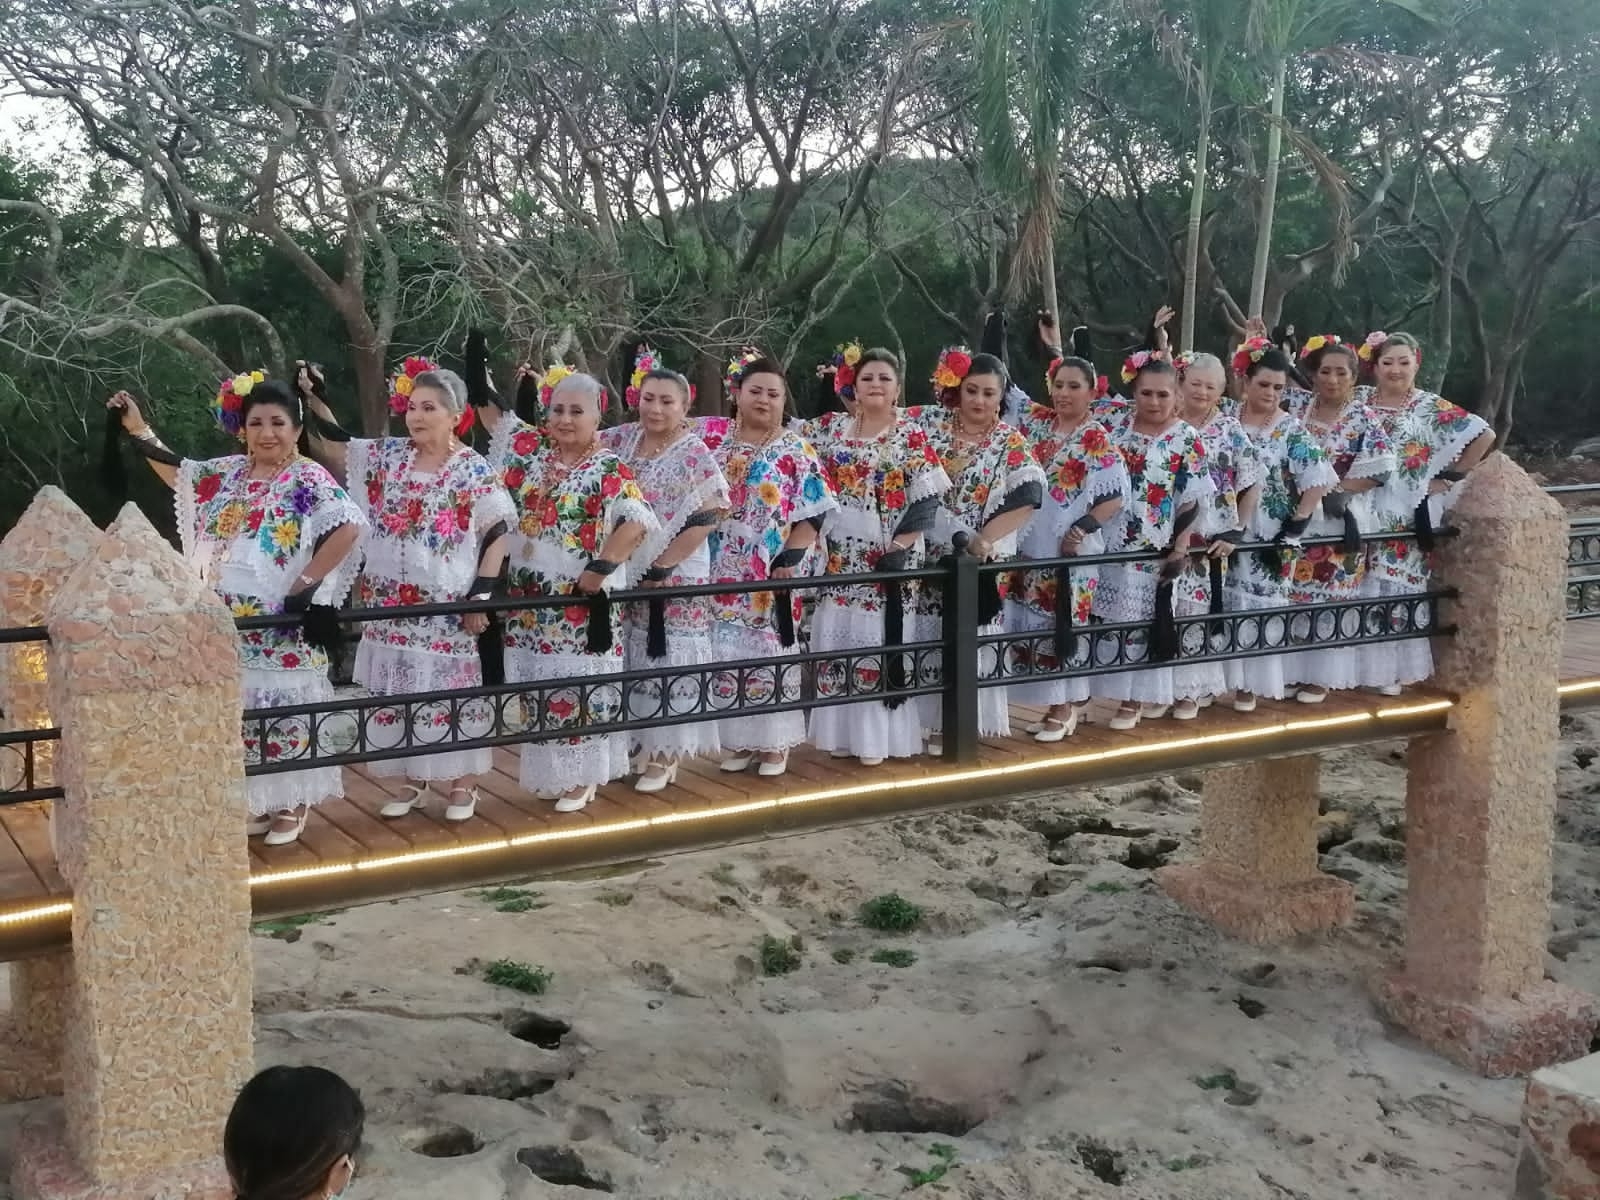 Abuelitas del grupo folklórico "Flor de Yucatán" celebran séptimo aniversario en Tekax